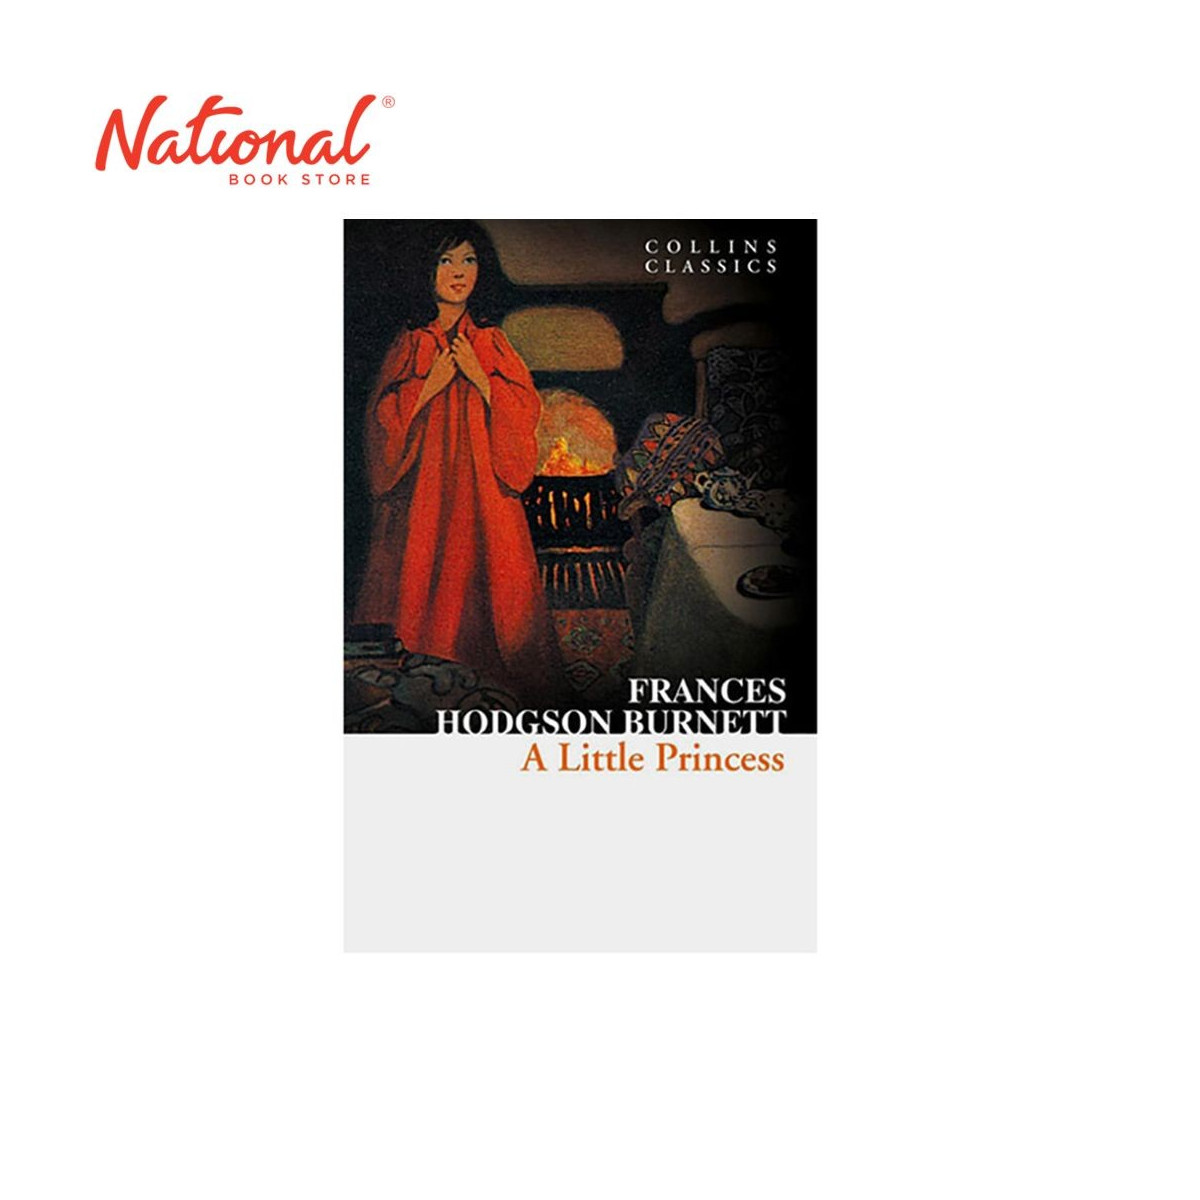 Collins Classics: A Little Princess by Frances Hodgson Burnett